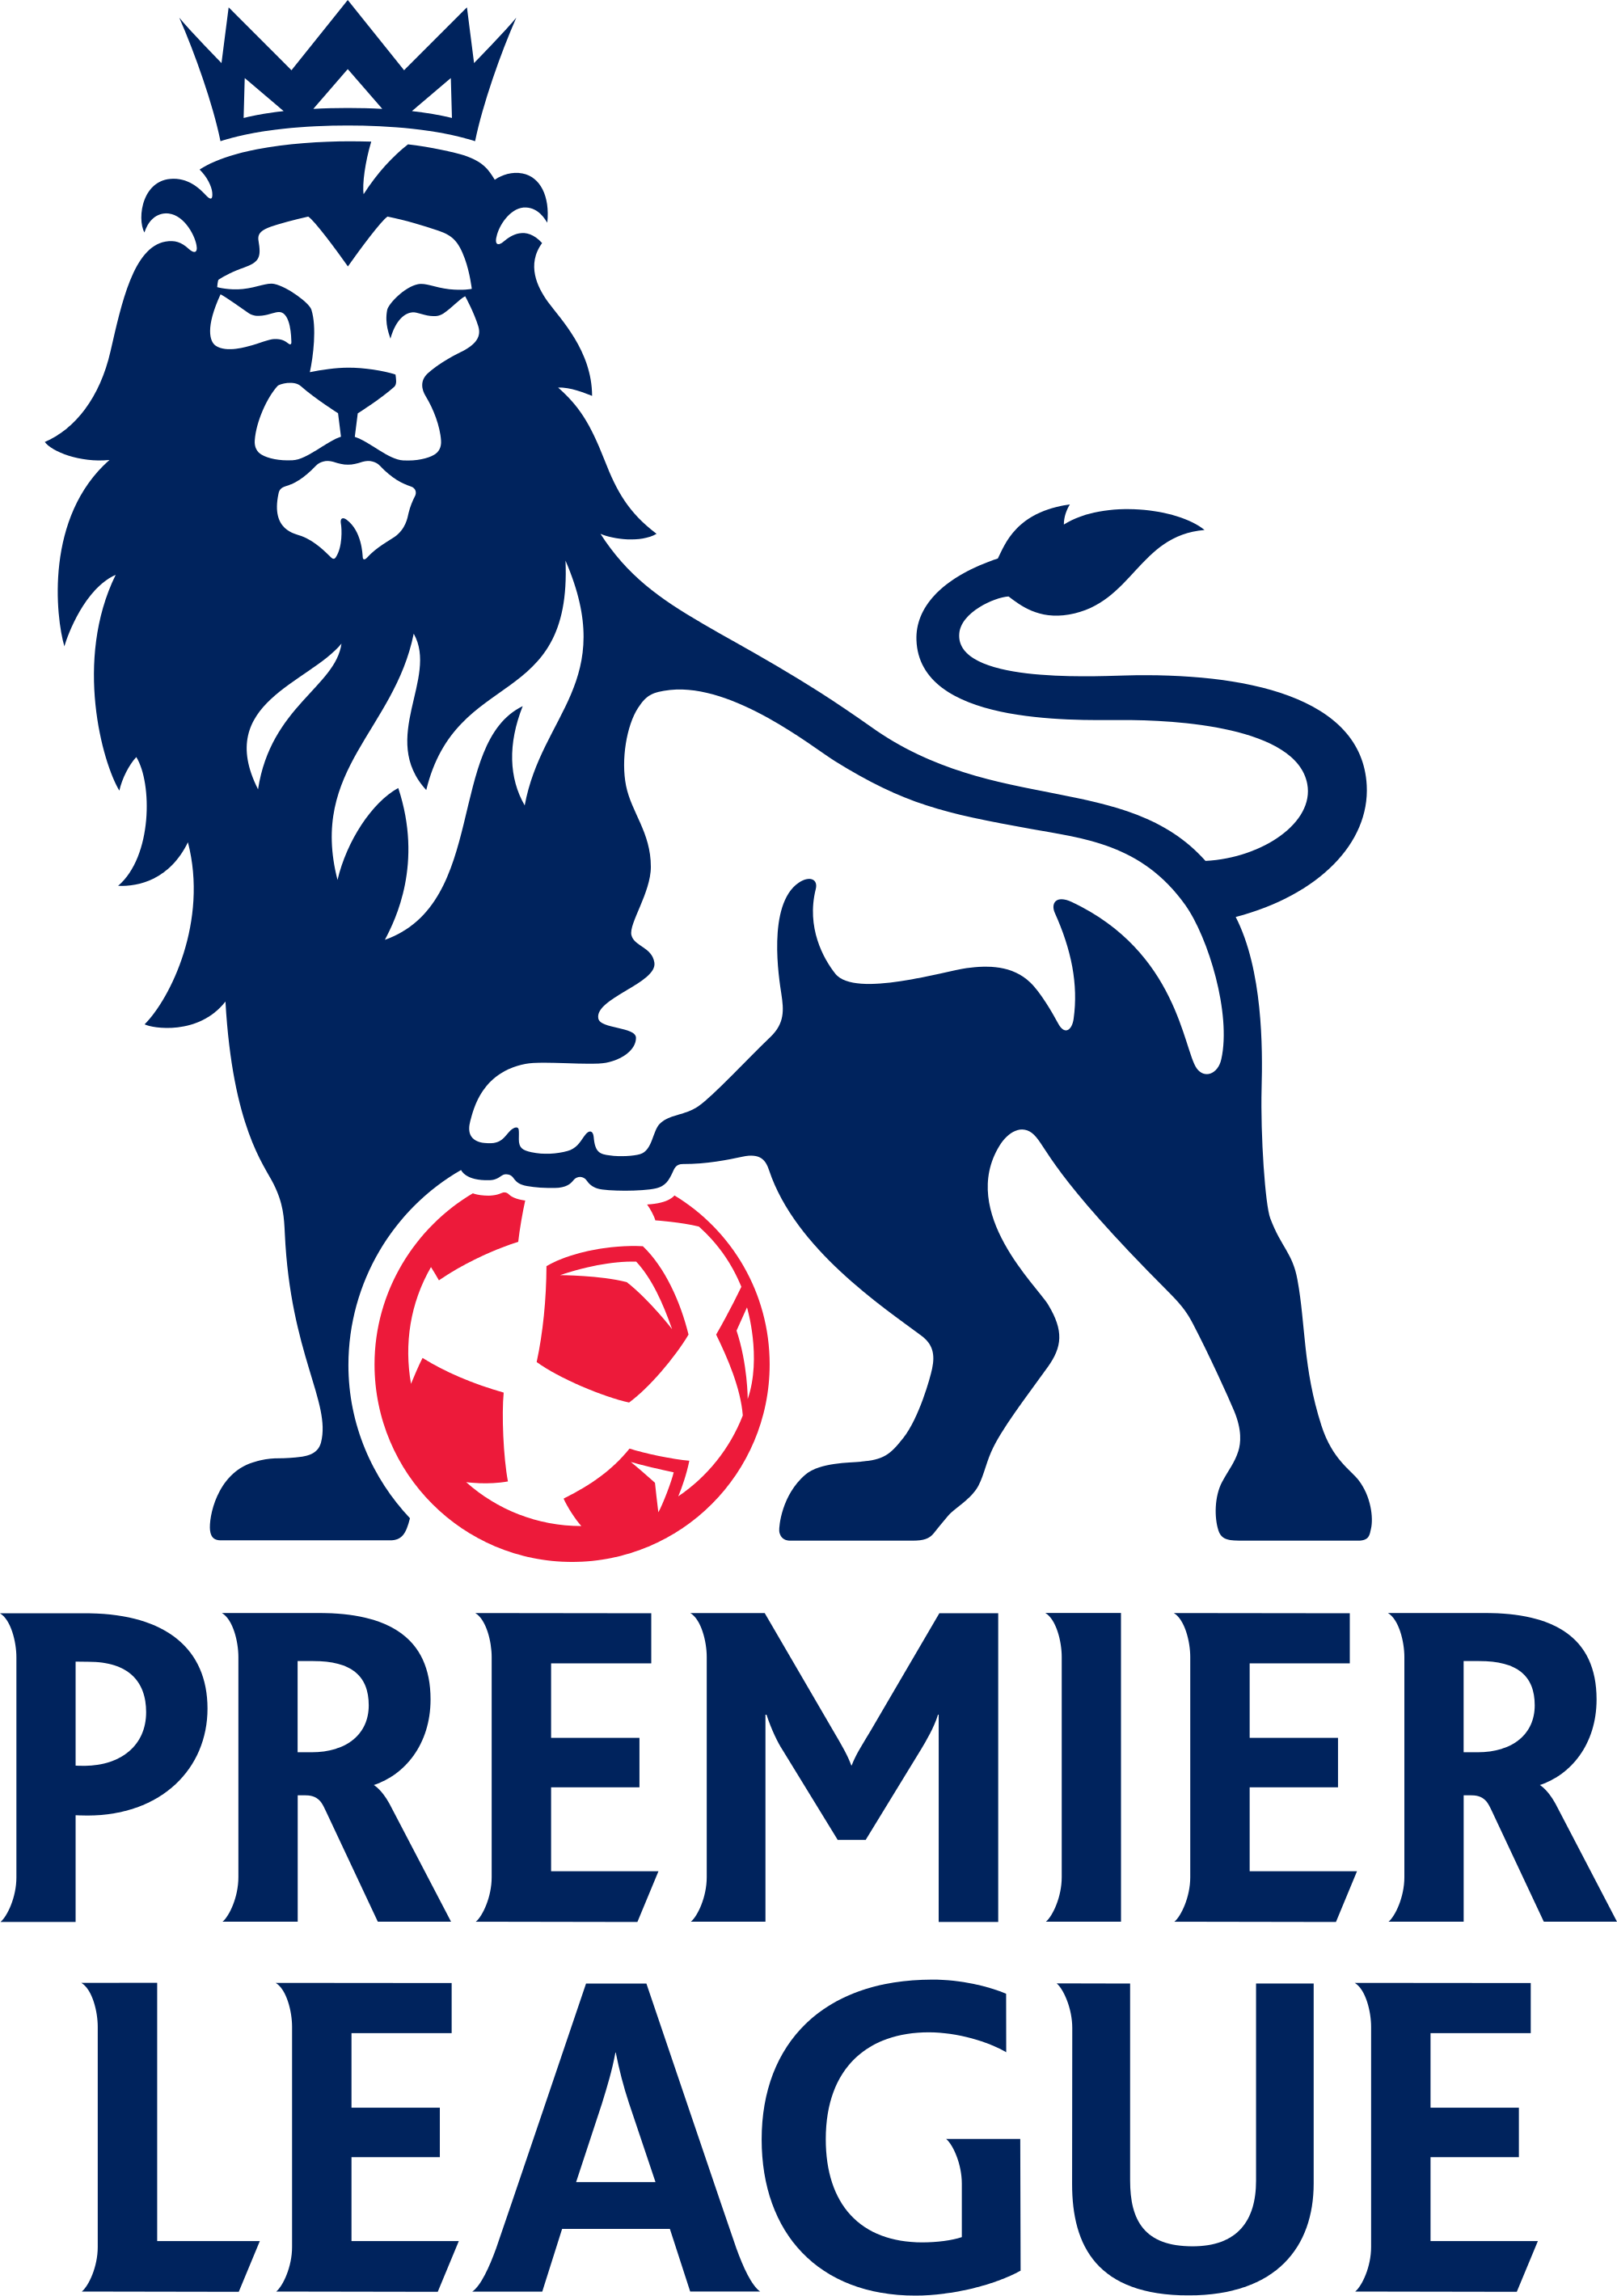 Premier League Logo.